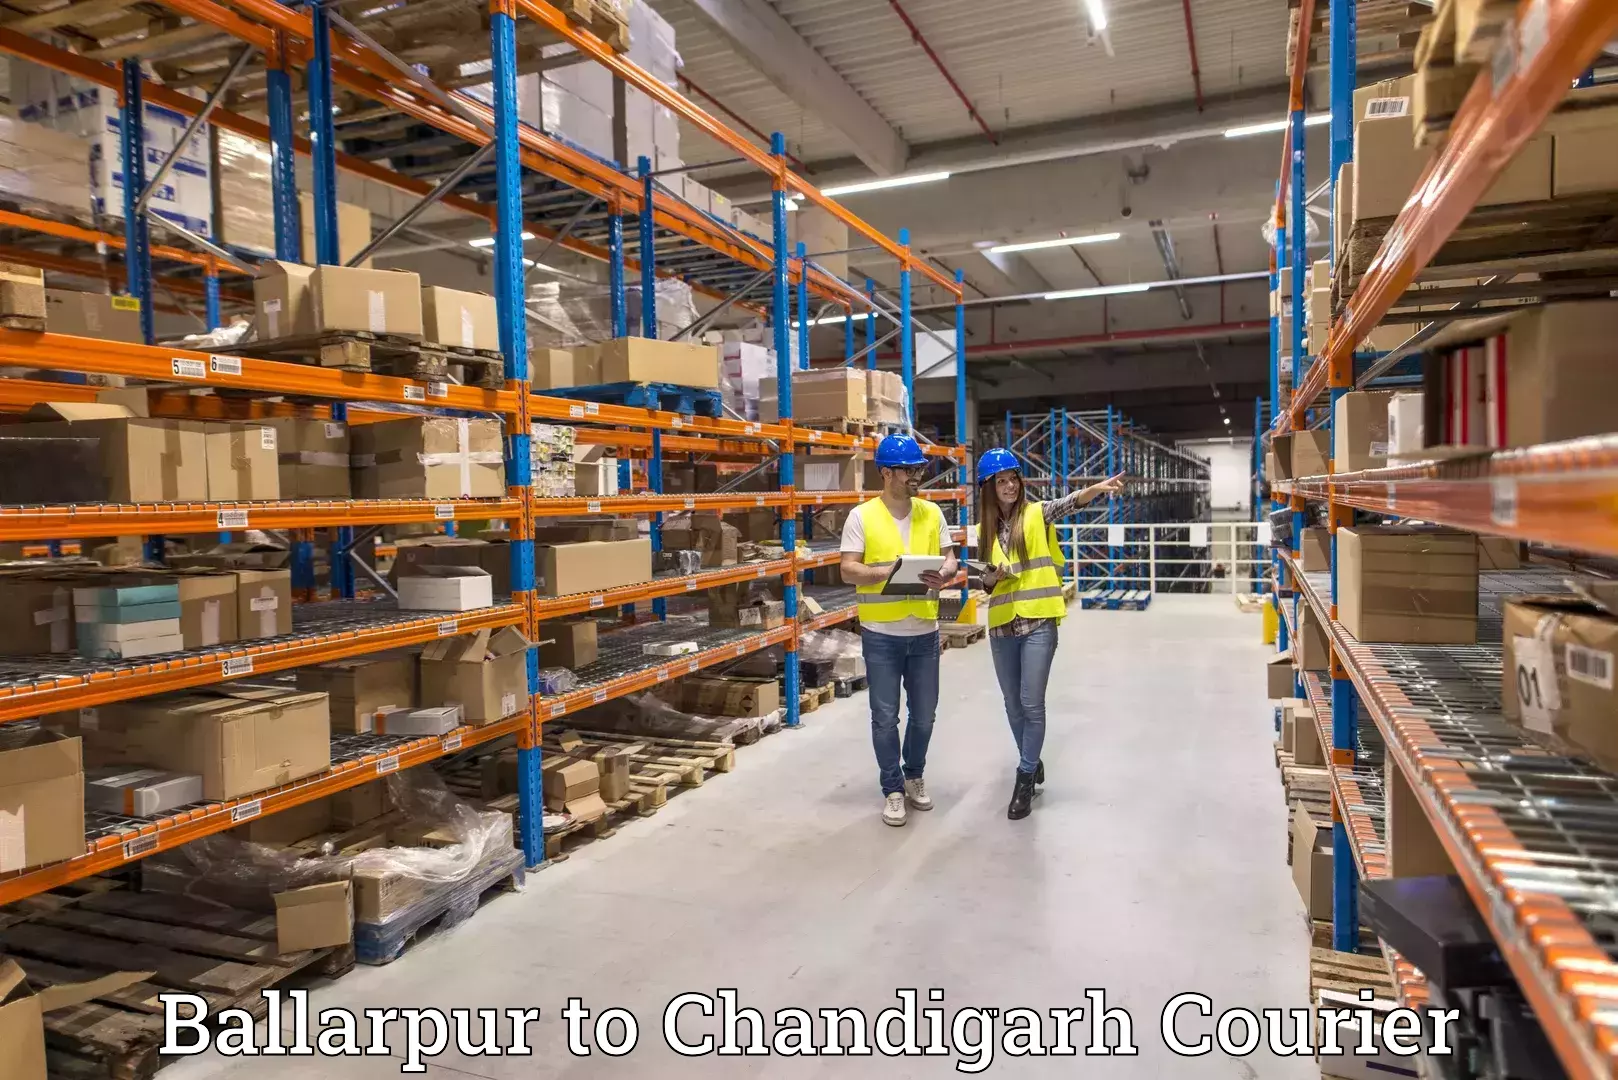 24-hour courier service Ballarpur to Chandigarh